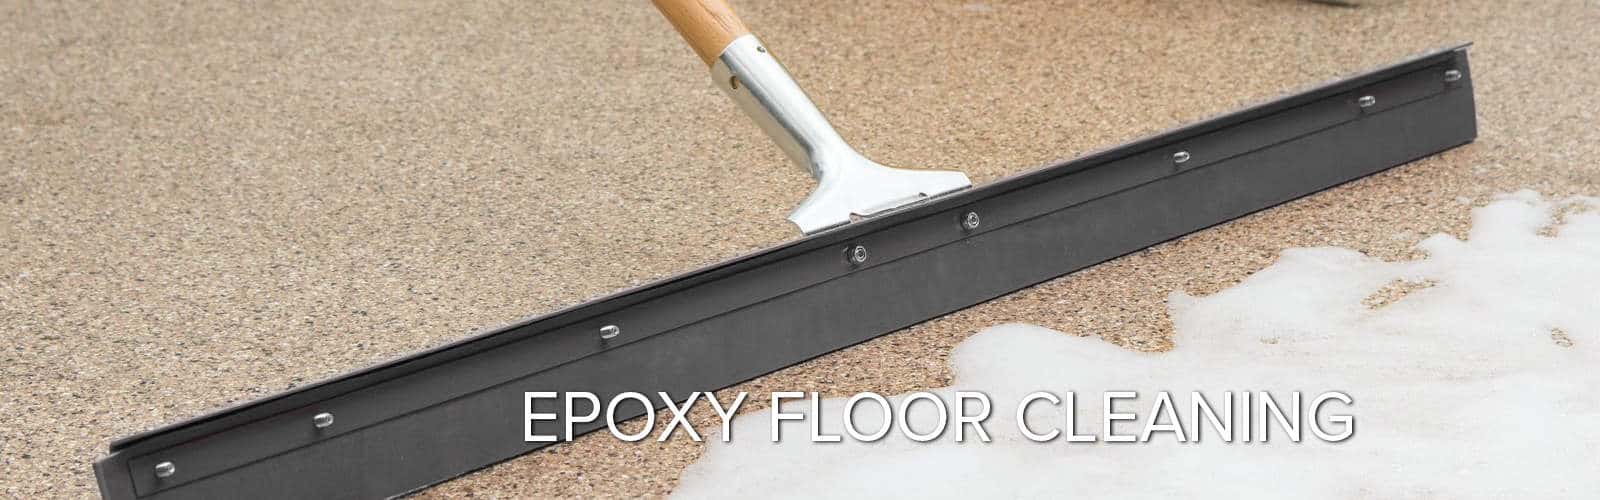 Shop Mop for Garage Tiles, Epoxy, & Concrete